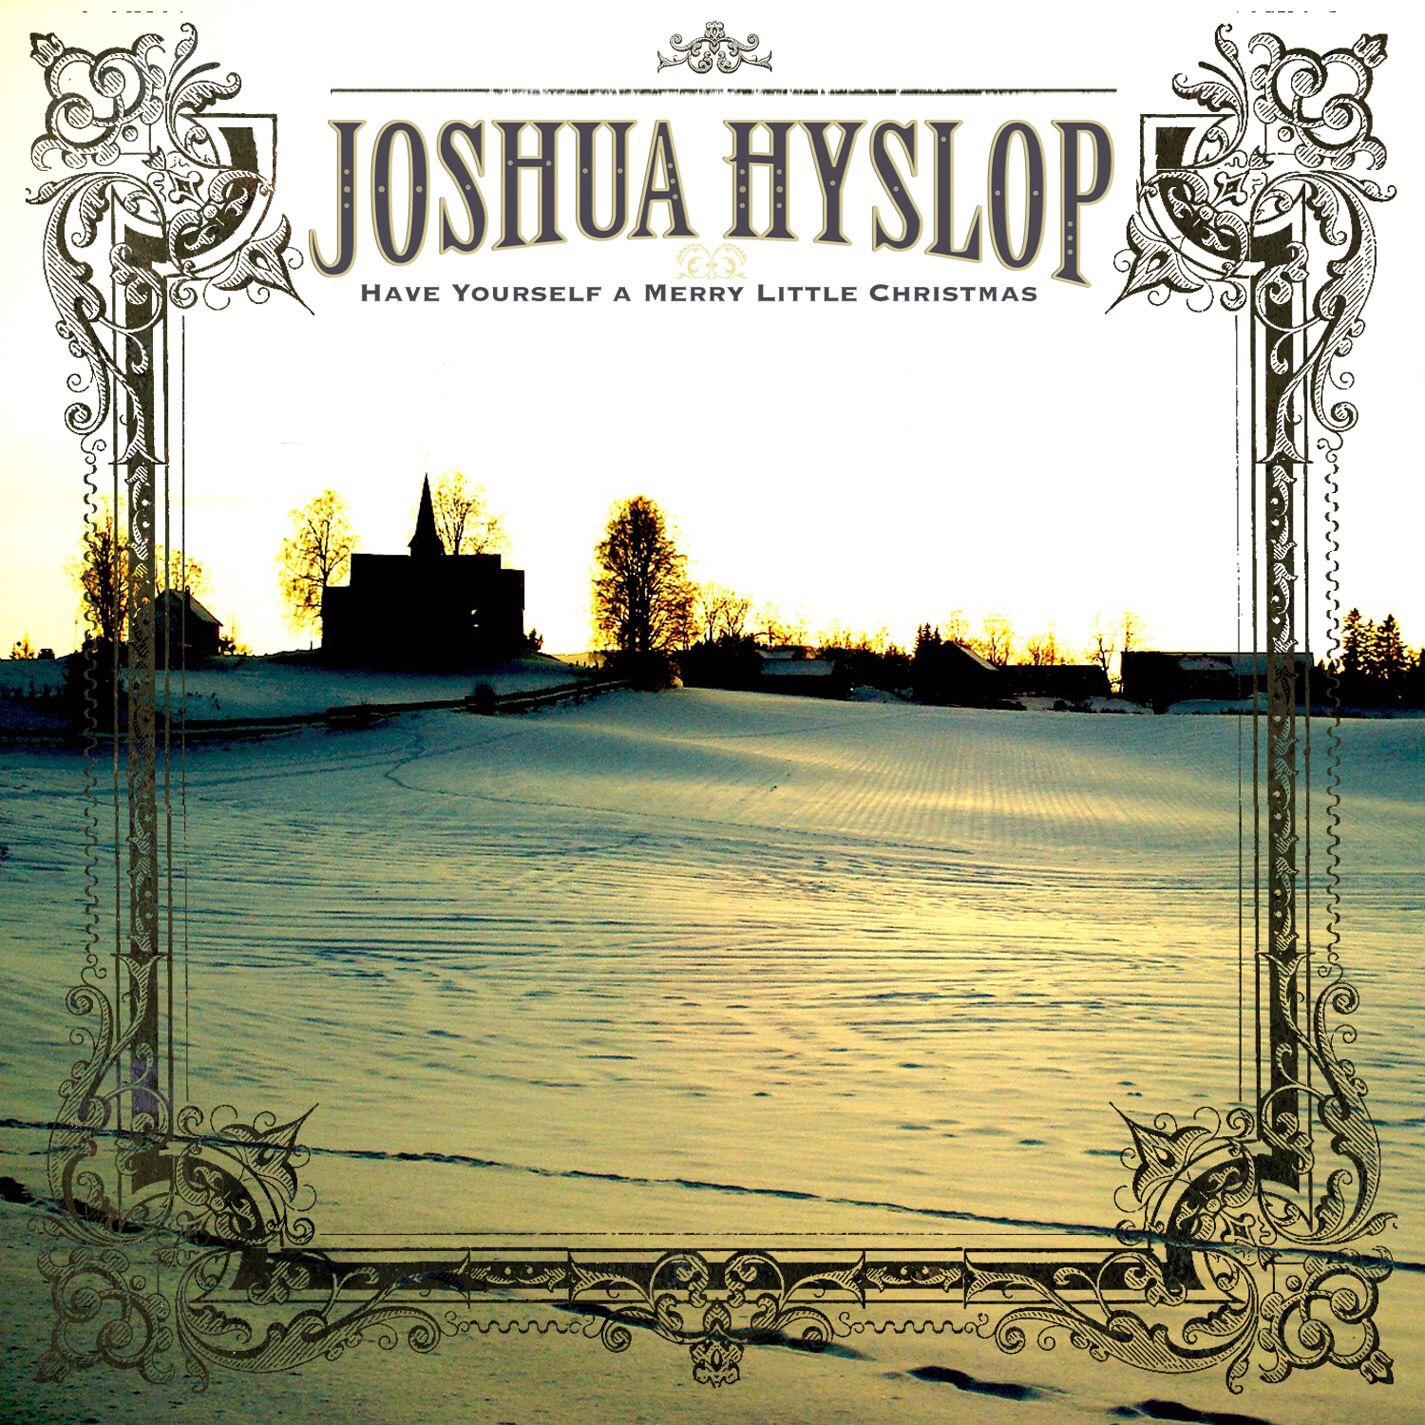 Joshua Hyslop